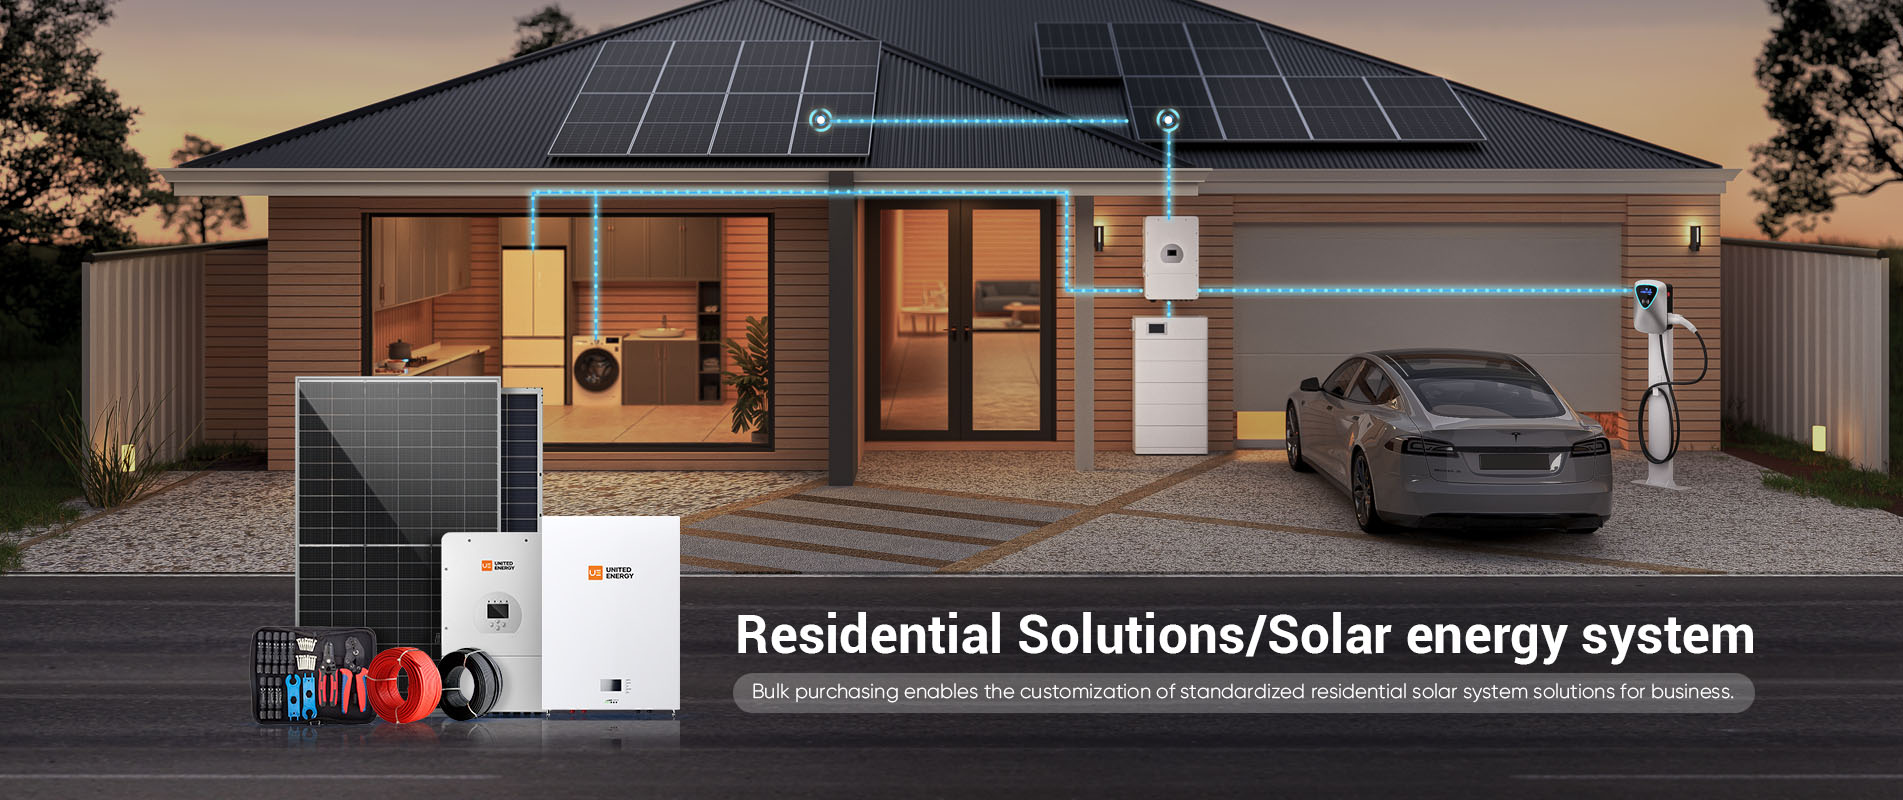 soluções residenciais em sistema de energia solar